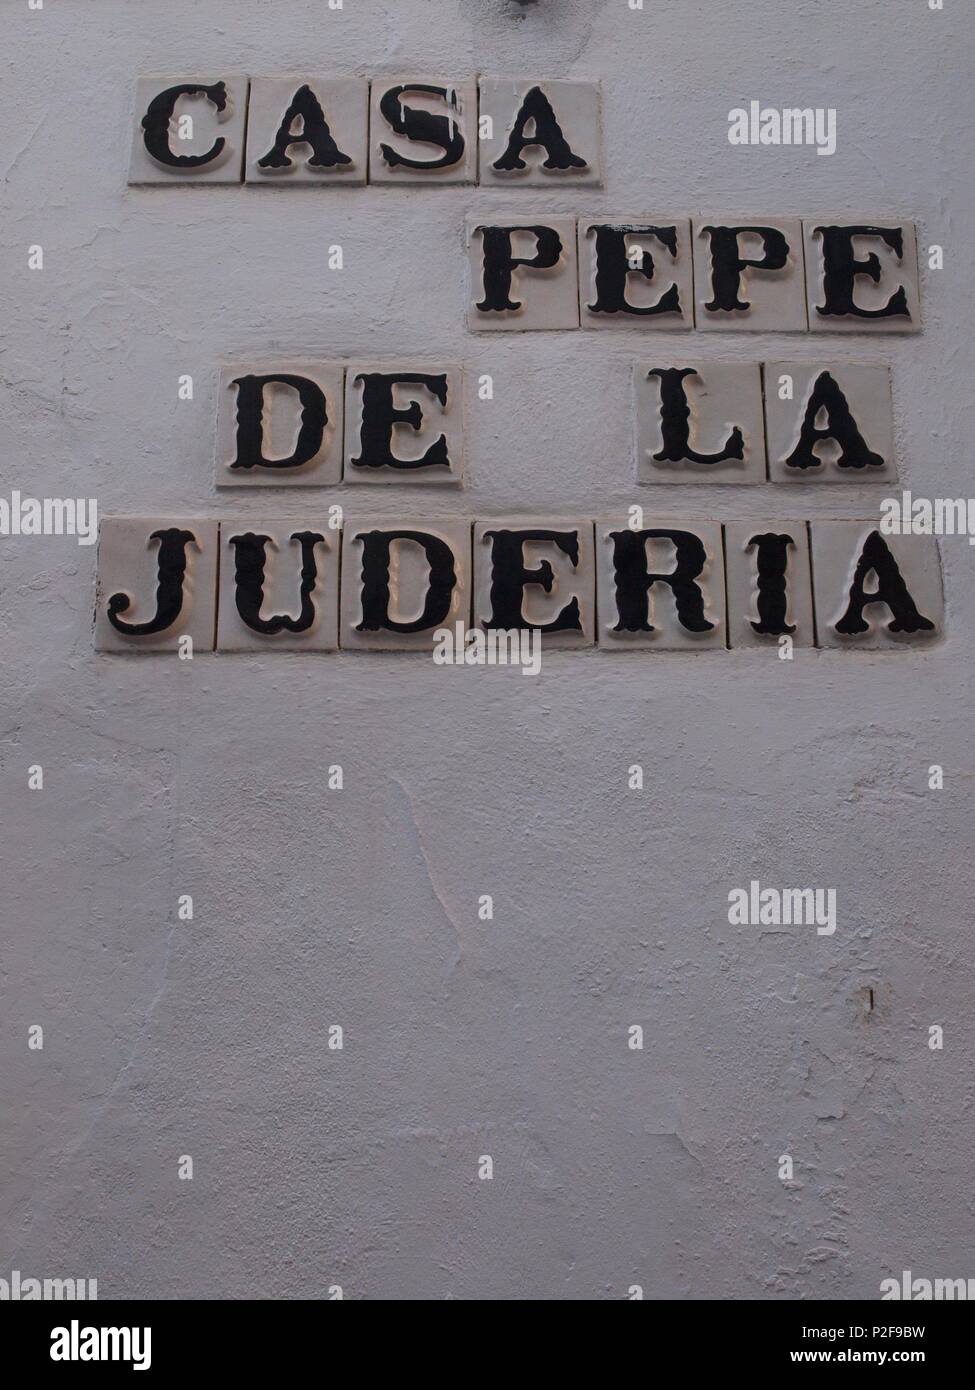 Casa Pepe de la Juderia. Cordoba. Stock Photo